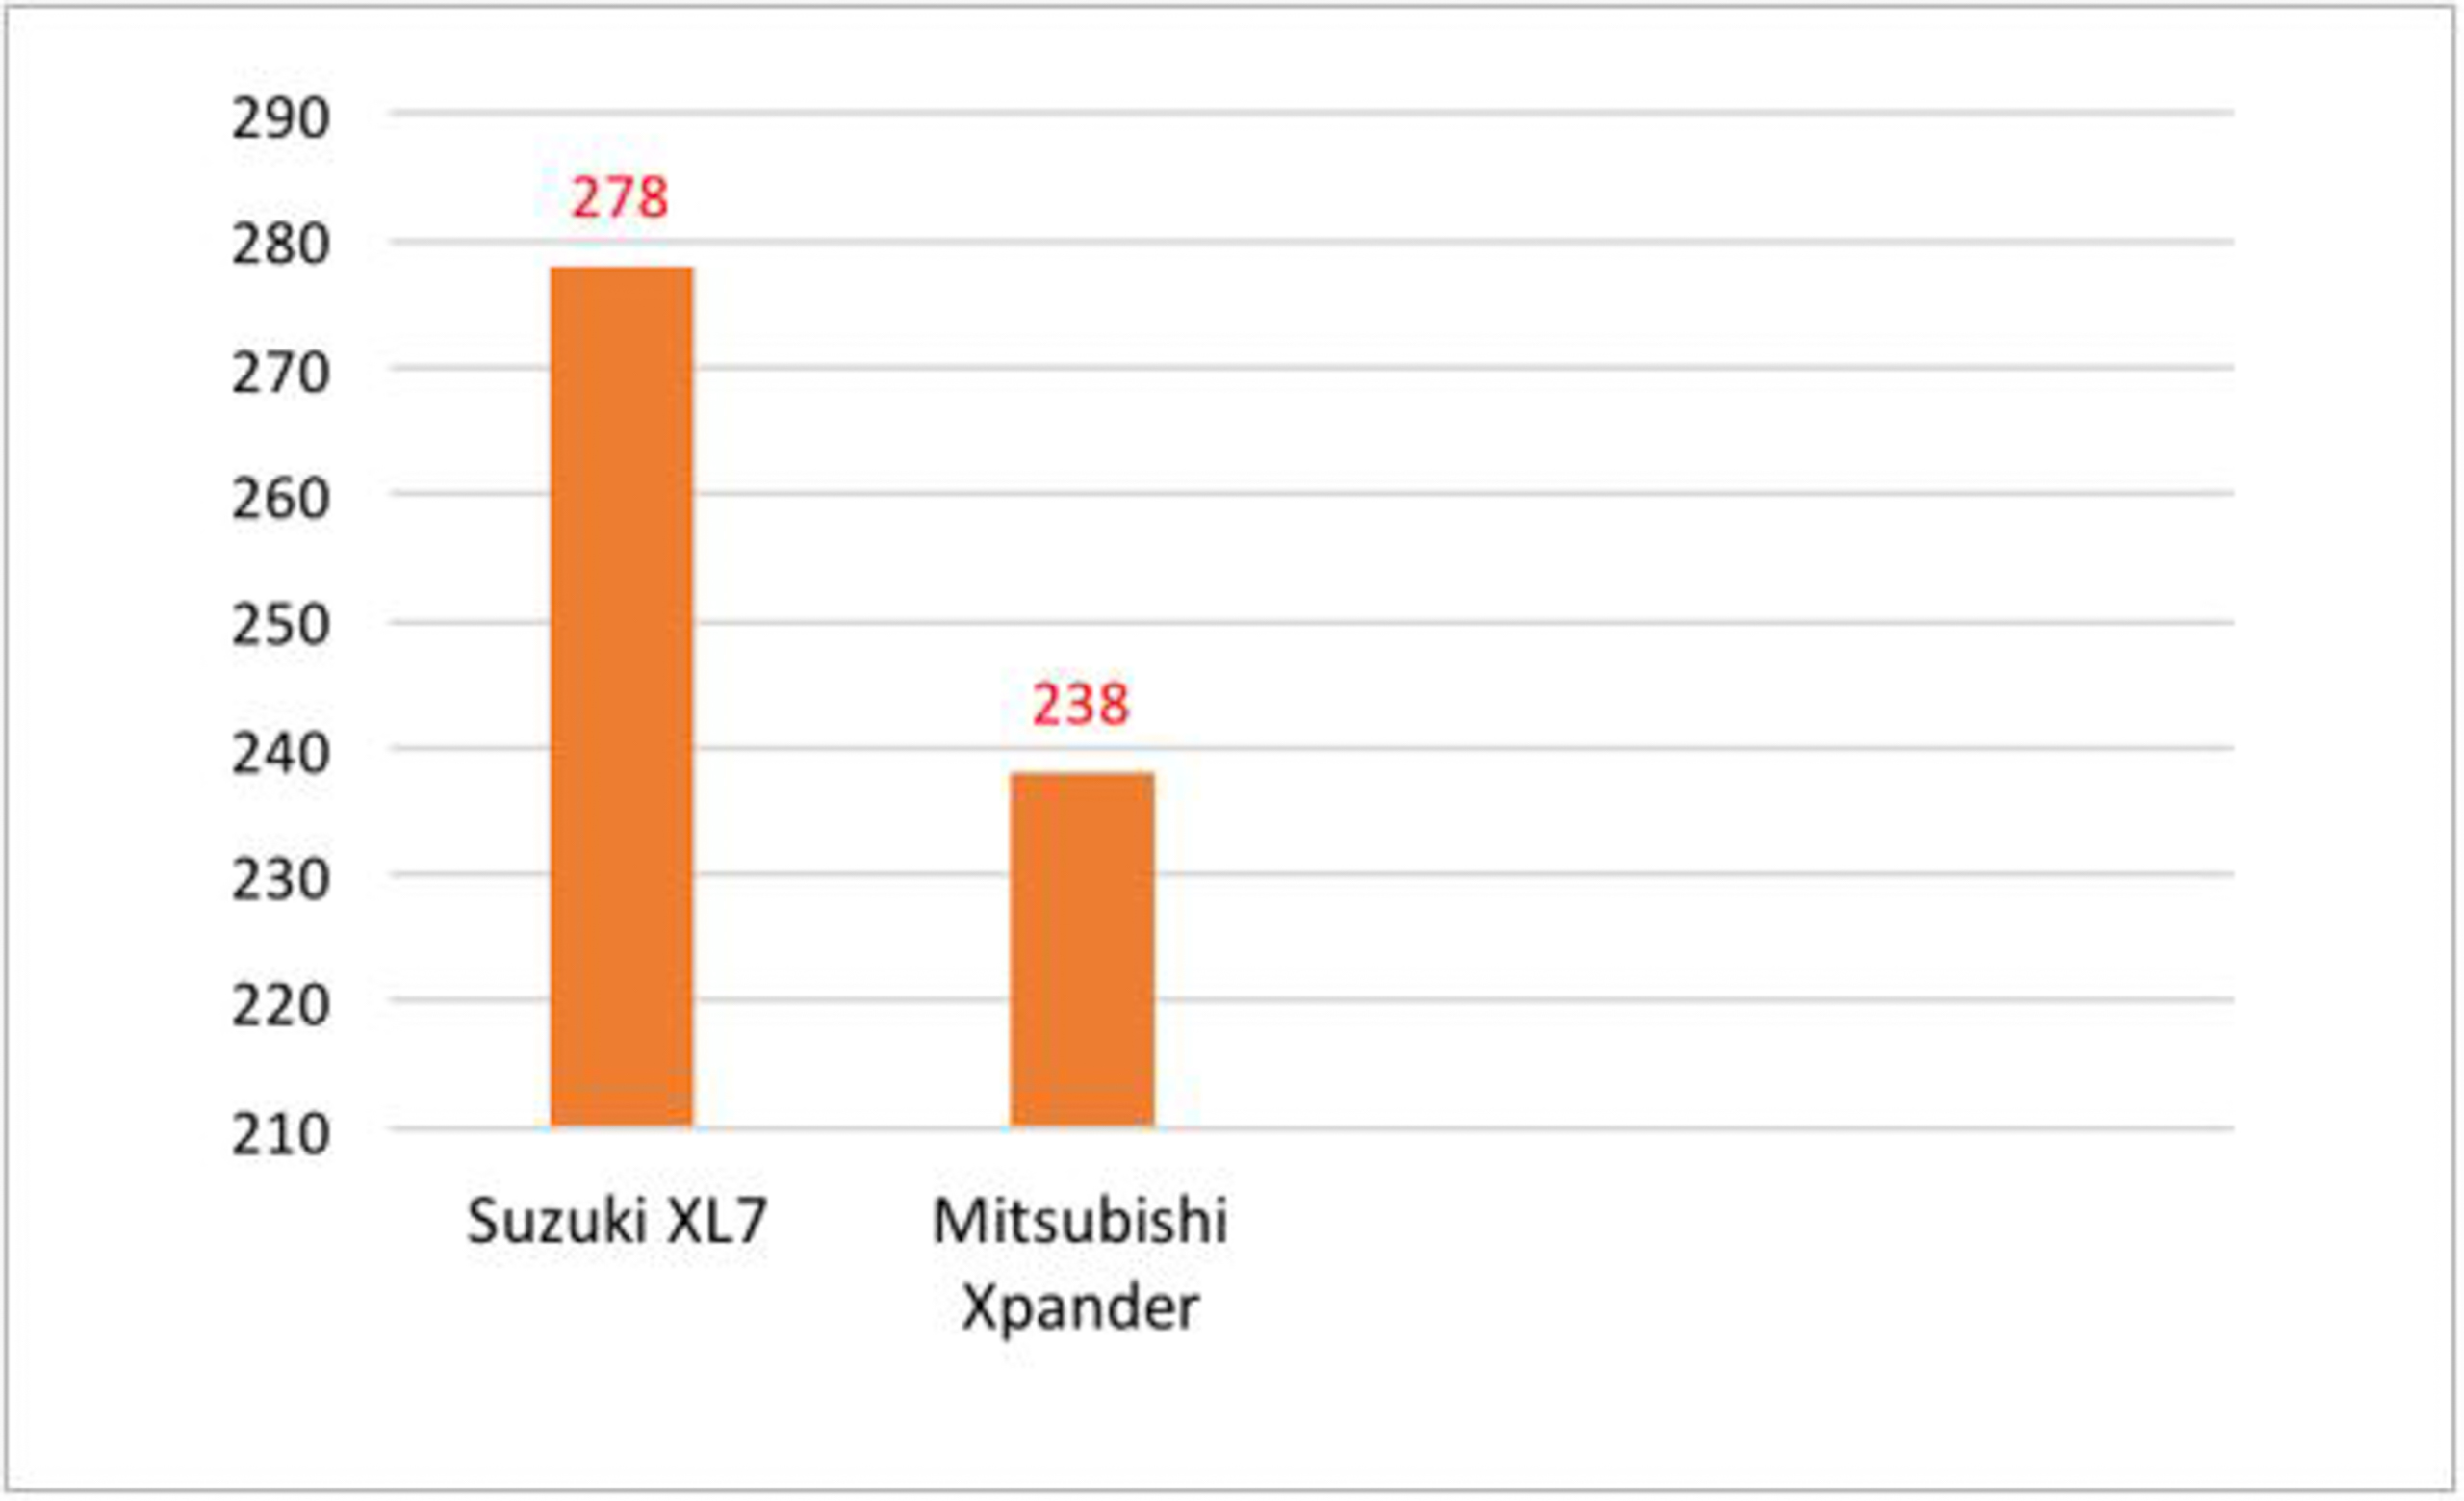 Được săn đón nhất tháng 9, Suzuki XL7 “soán ngôi” đầu bảng của Mitsubishi Xpander trong phân khúc xe 7 chỗ